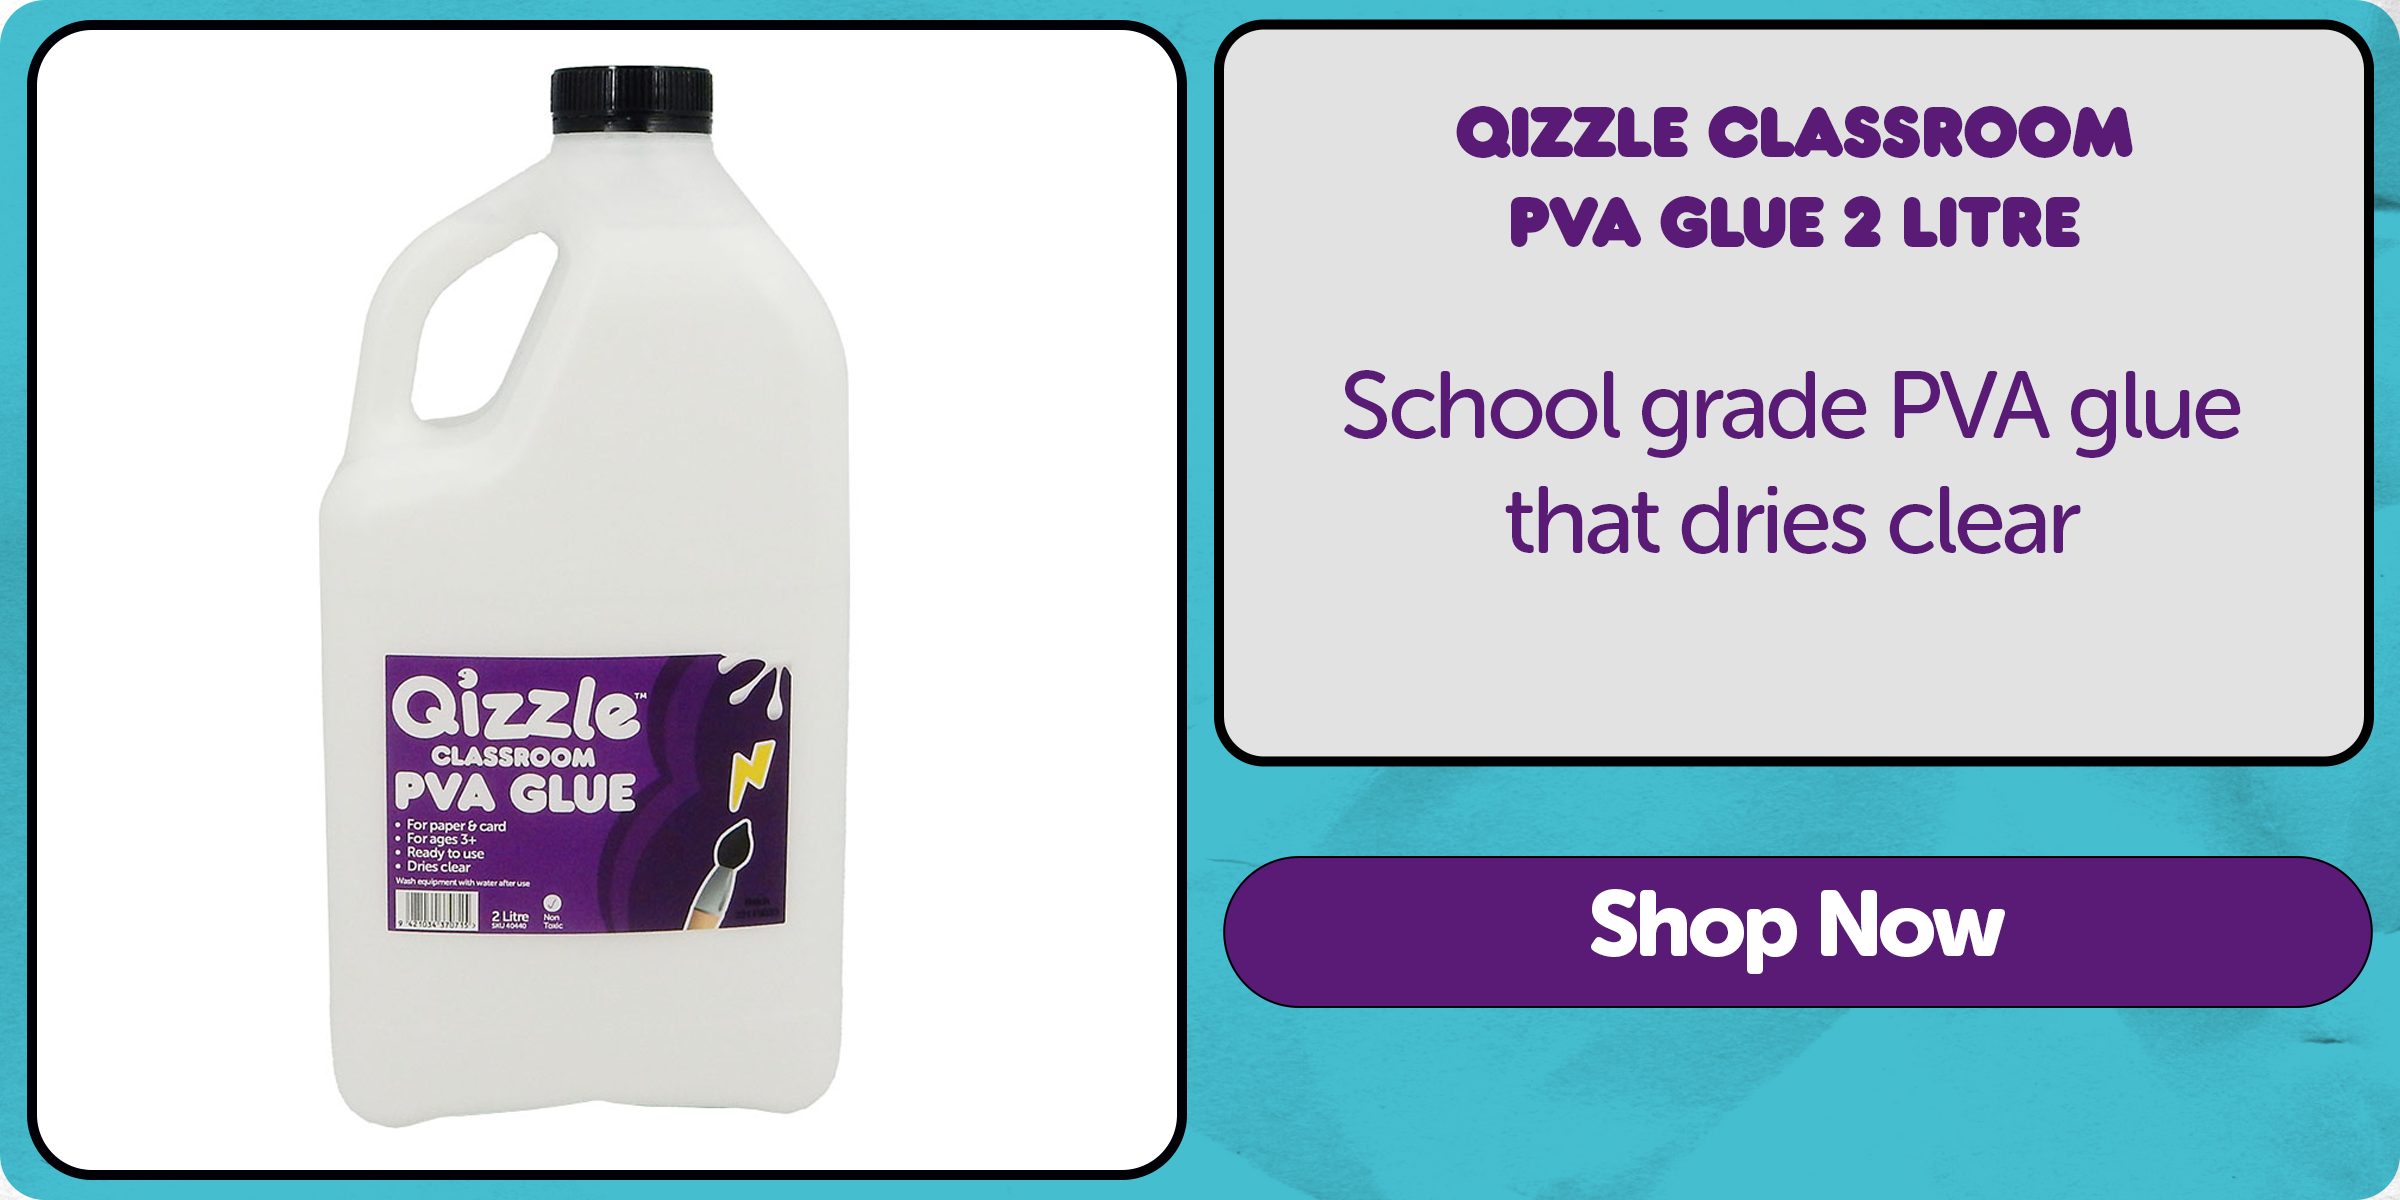 Qizzle Classroom PVA